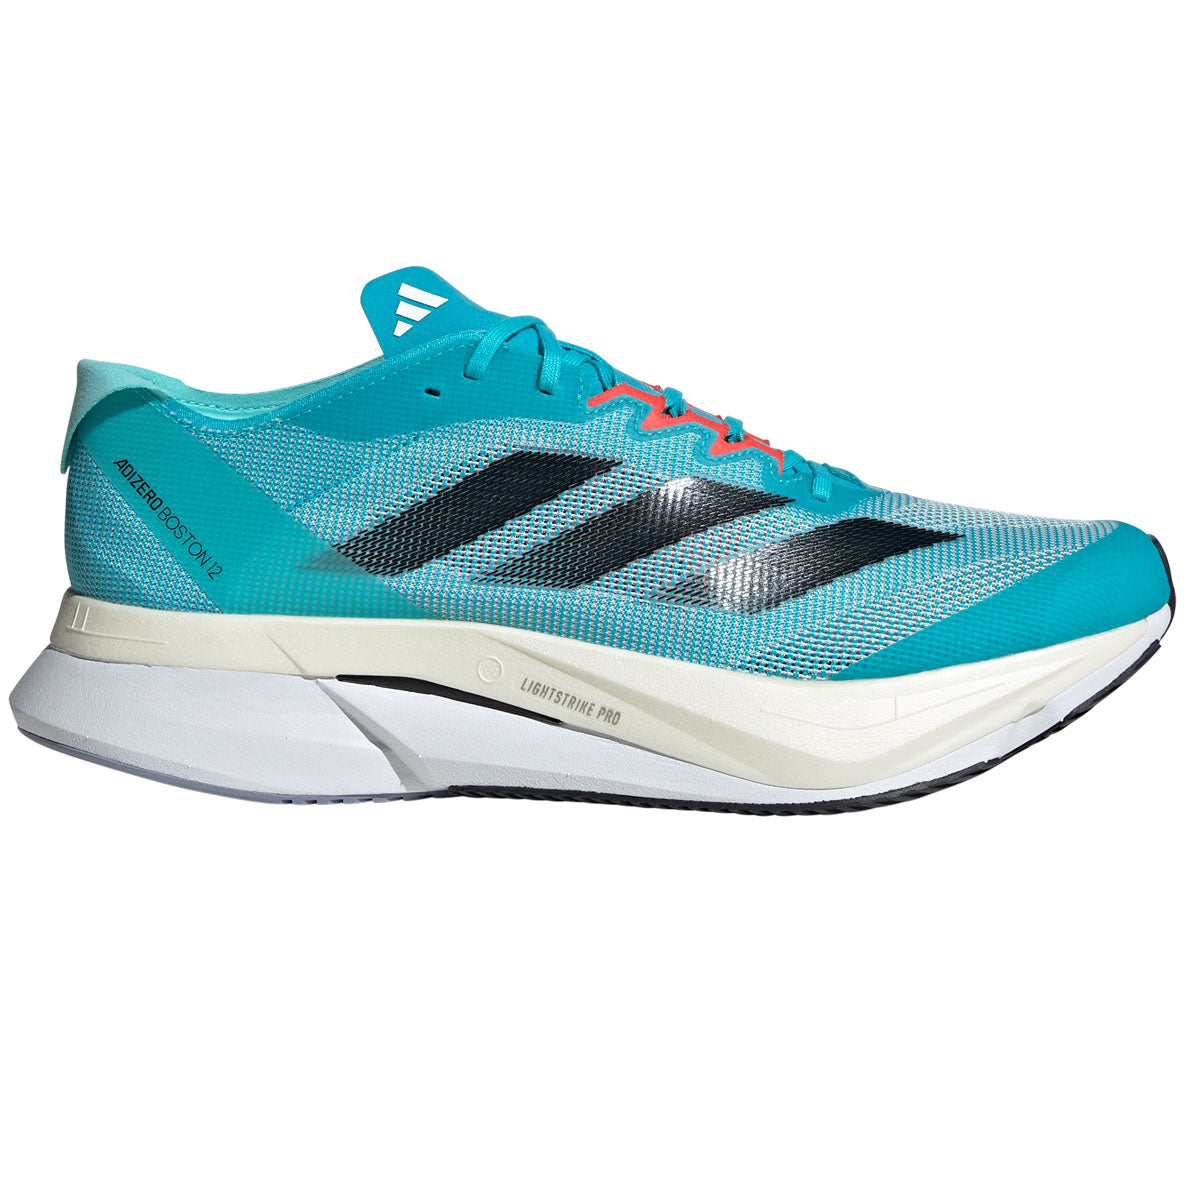 adidas Adizero Boston 12 Running Shoes - Mens - Cyan/Black/Aqua